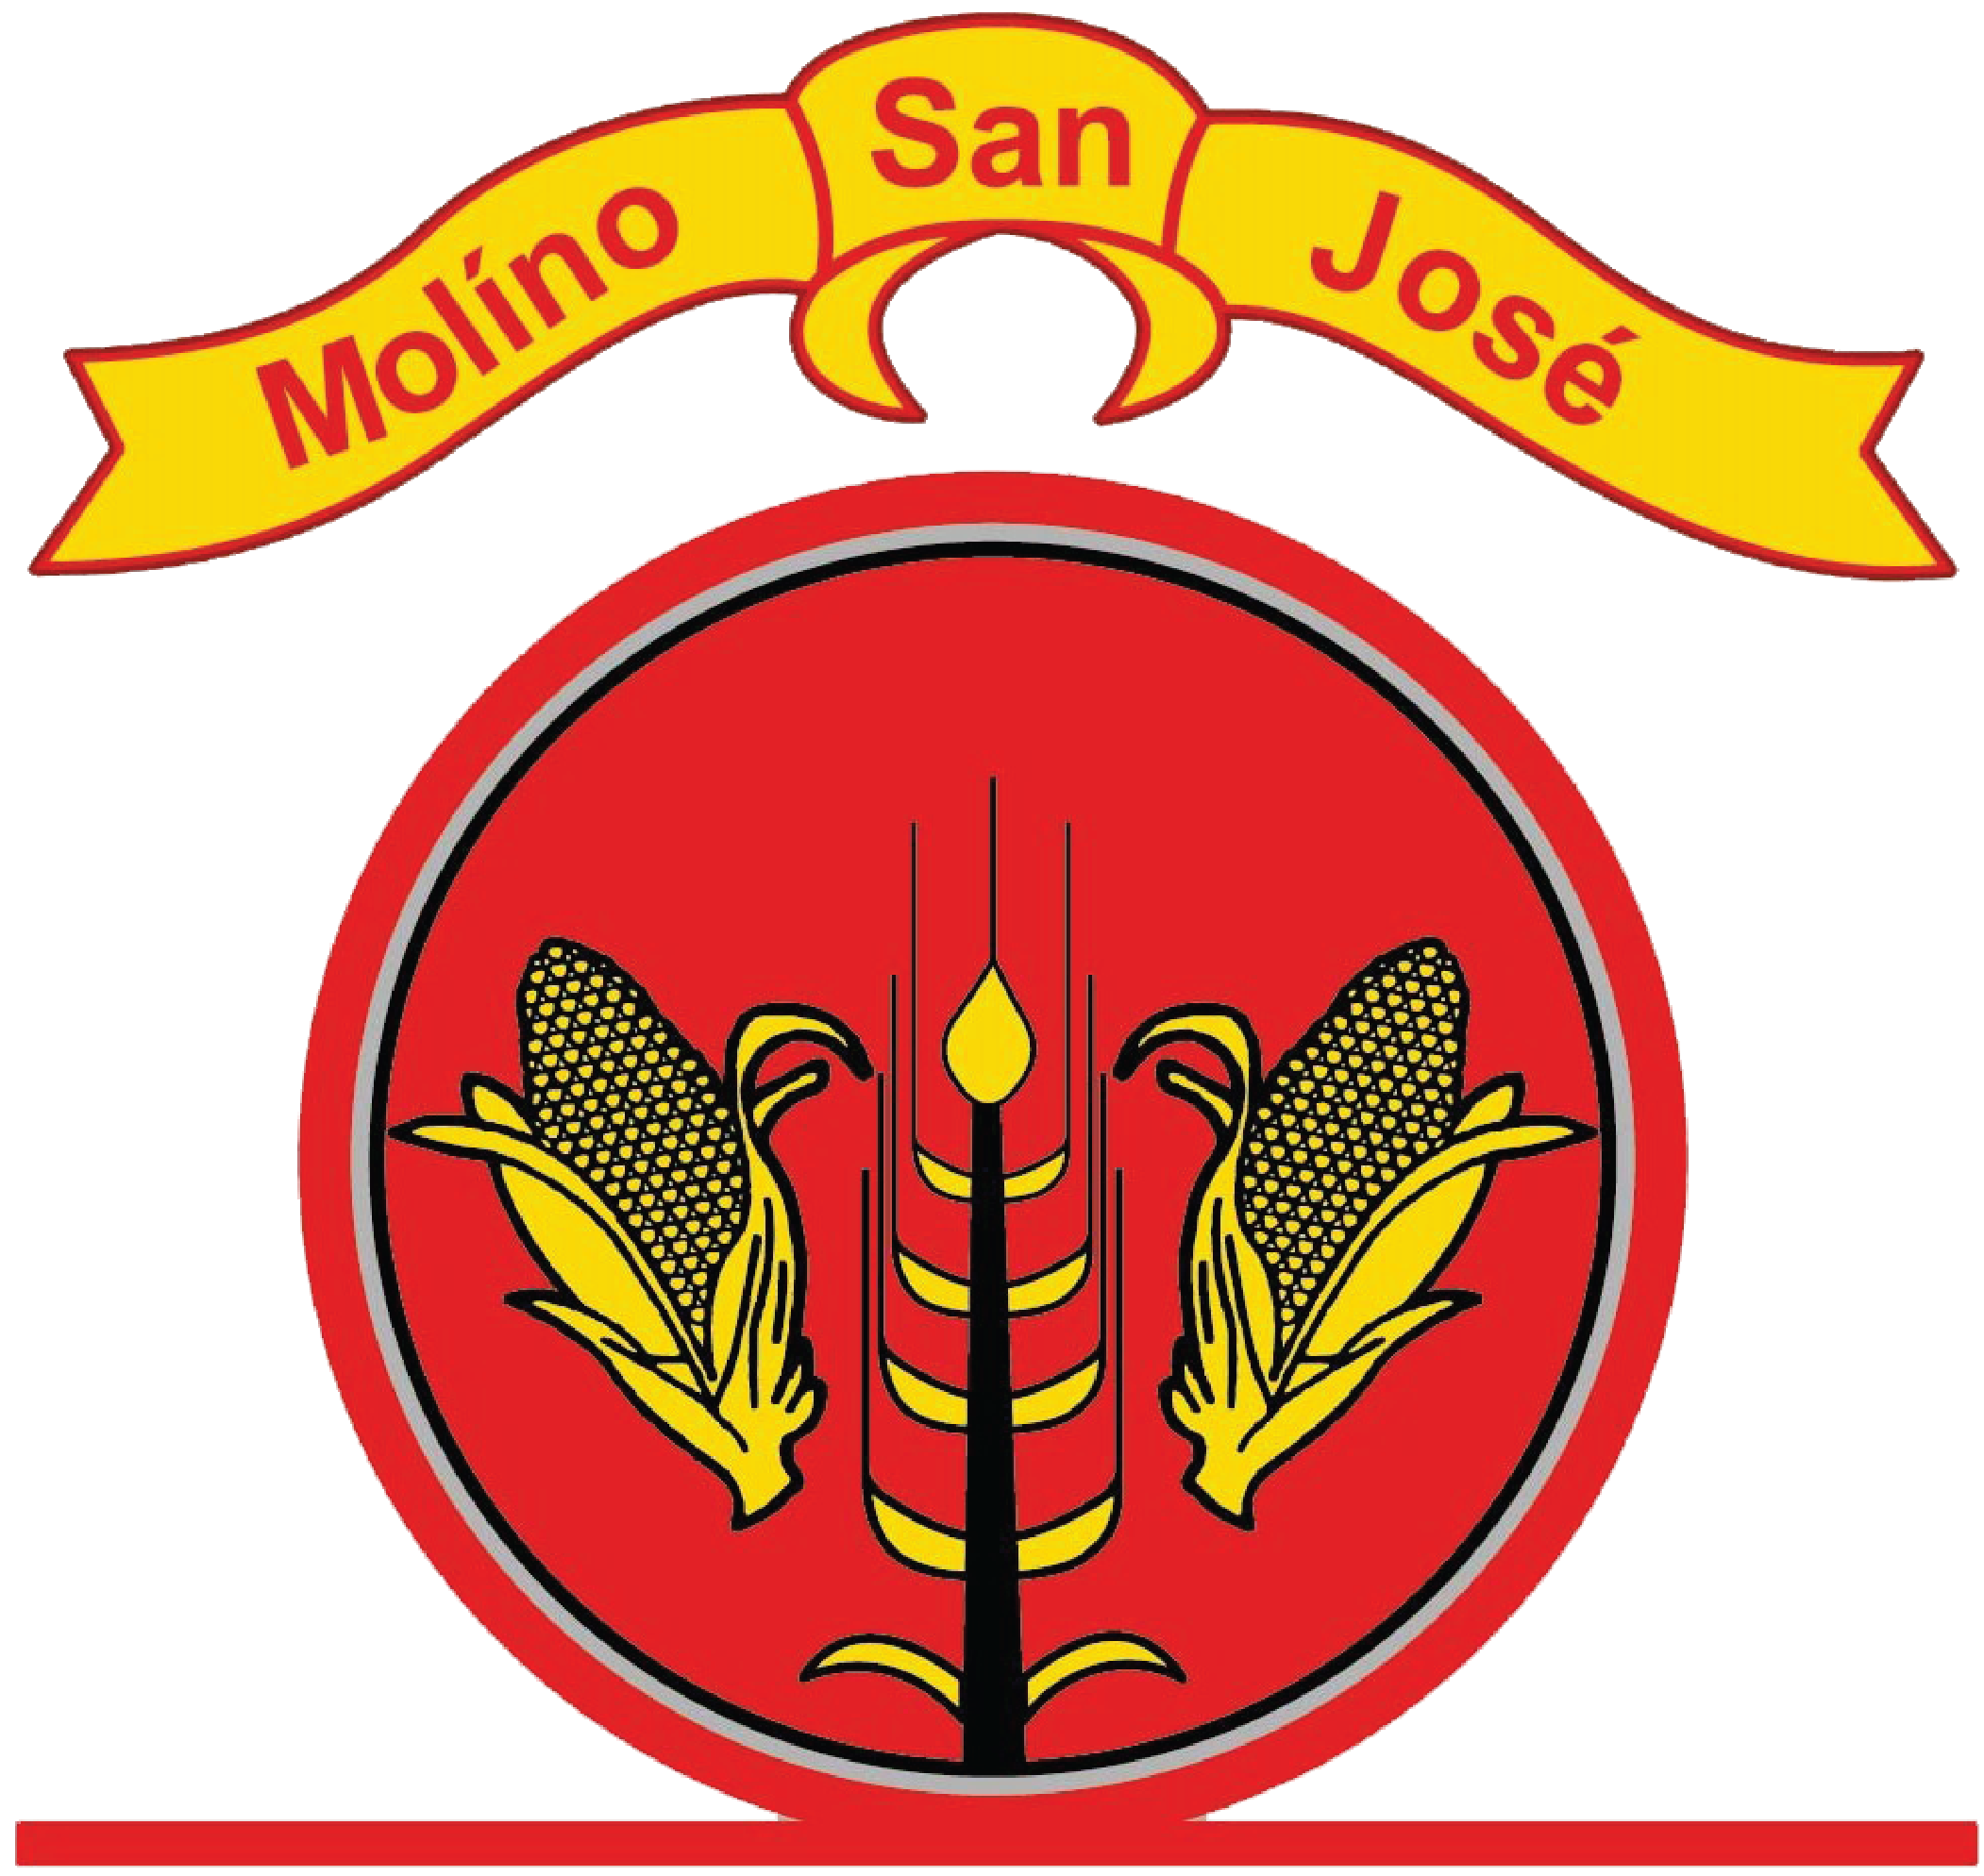 Molino San Jose cliente oasiscom